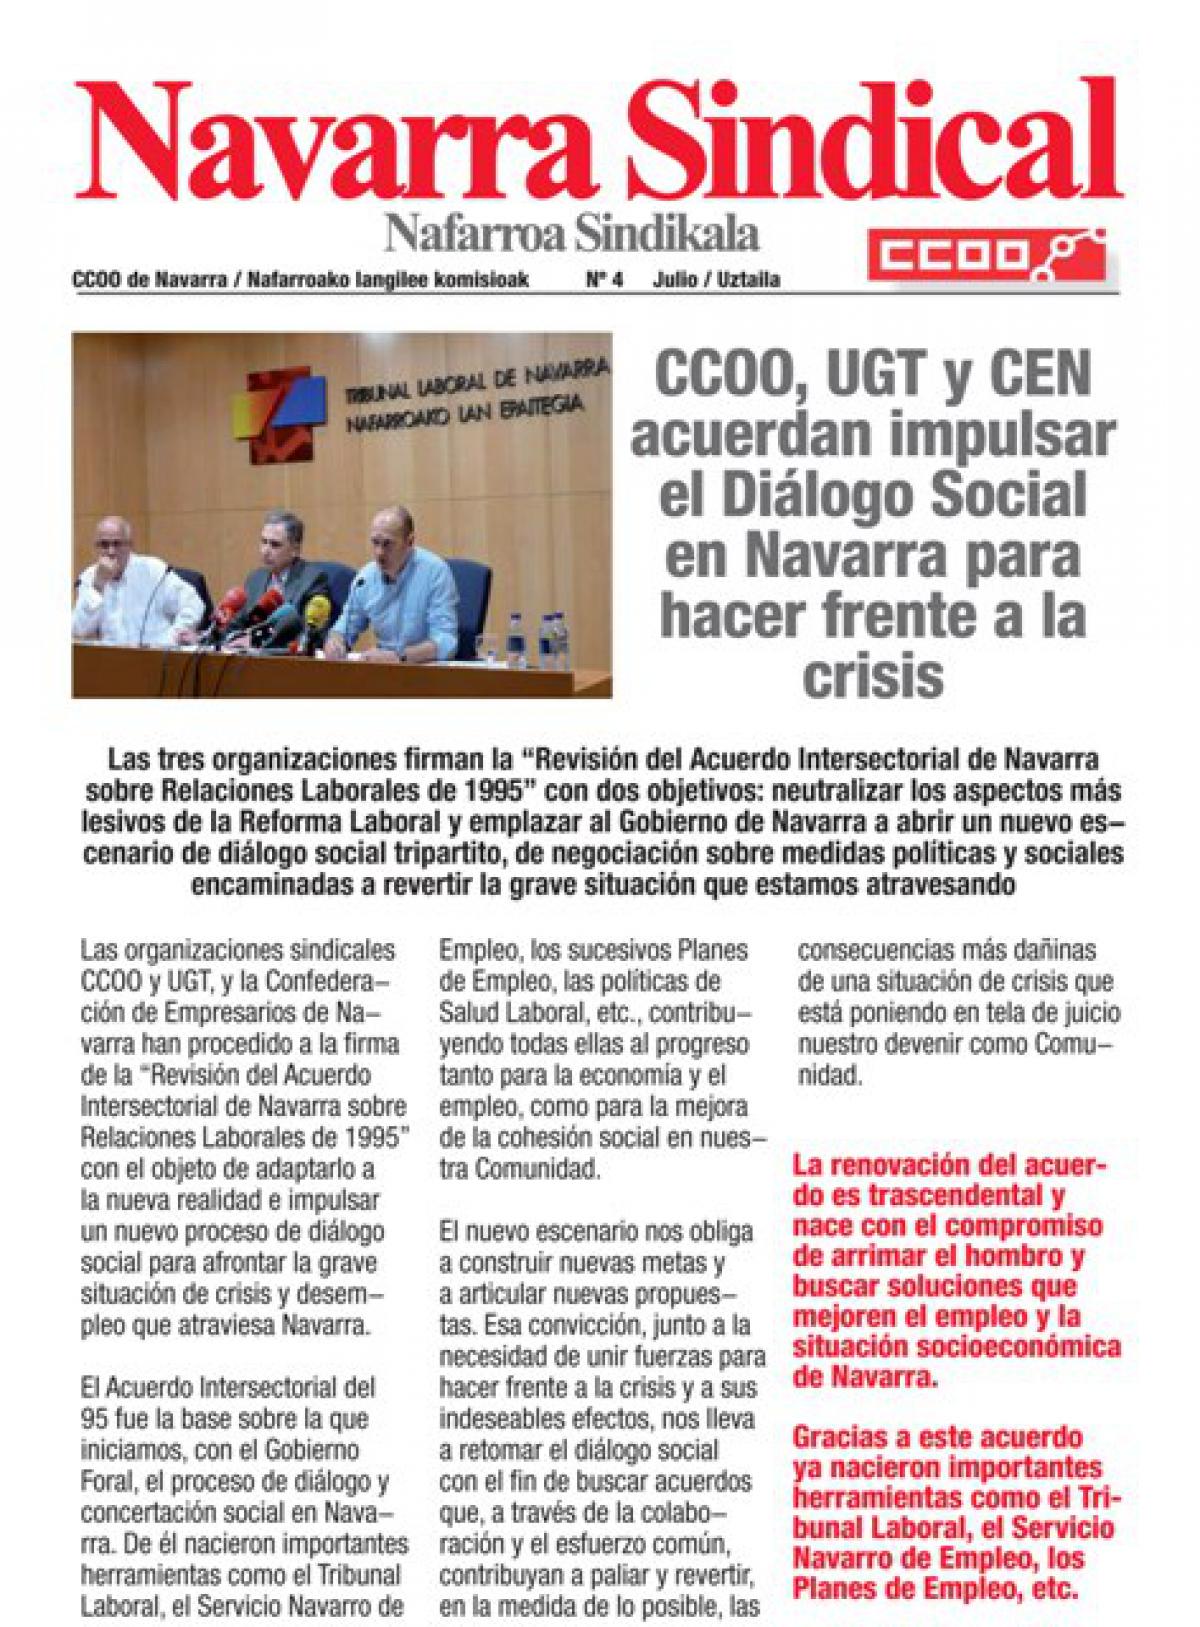 CCOO, UGT y CEN acuerdan impulsar el Dilogo Social en Navarra para hacer frente a la crisis